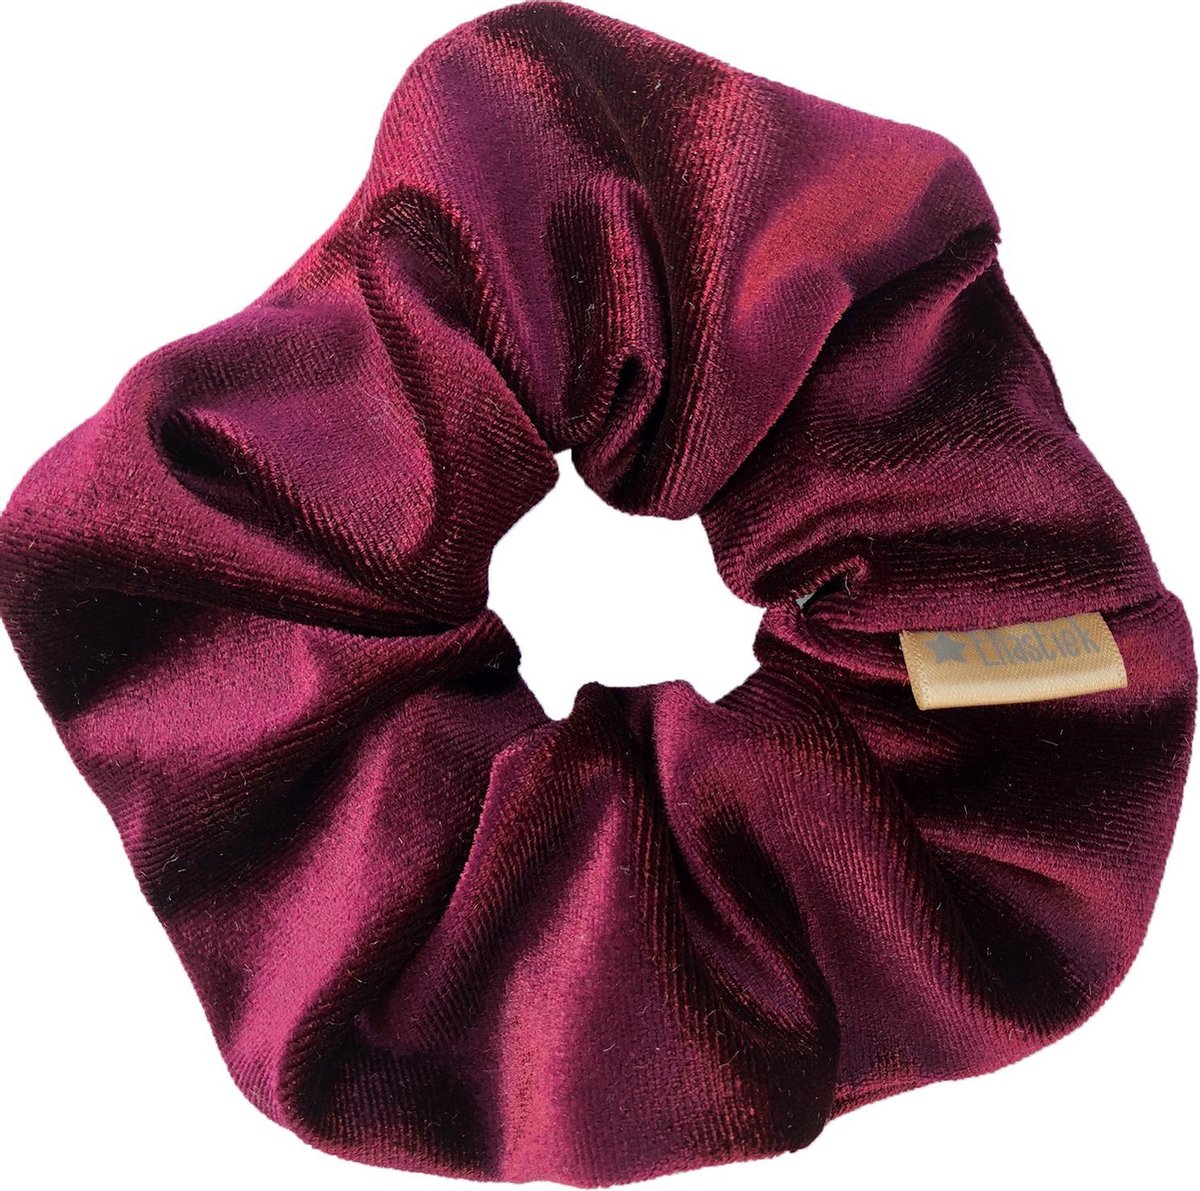 Ellastiek scrunchie velvet bordeaux rood - haarelastiekjes - haar accessoire - luxe uitstraling en kwaliteit- Handmade in Amsterdam(babsstiek)